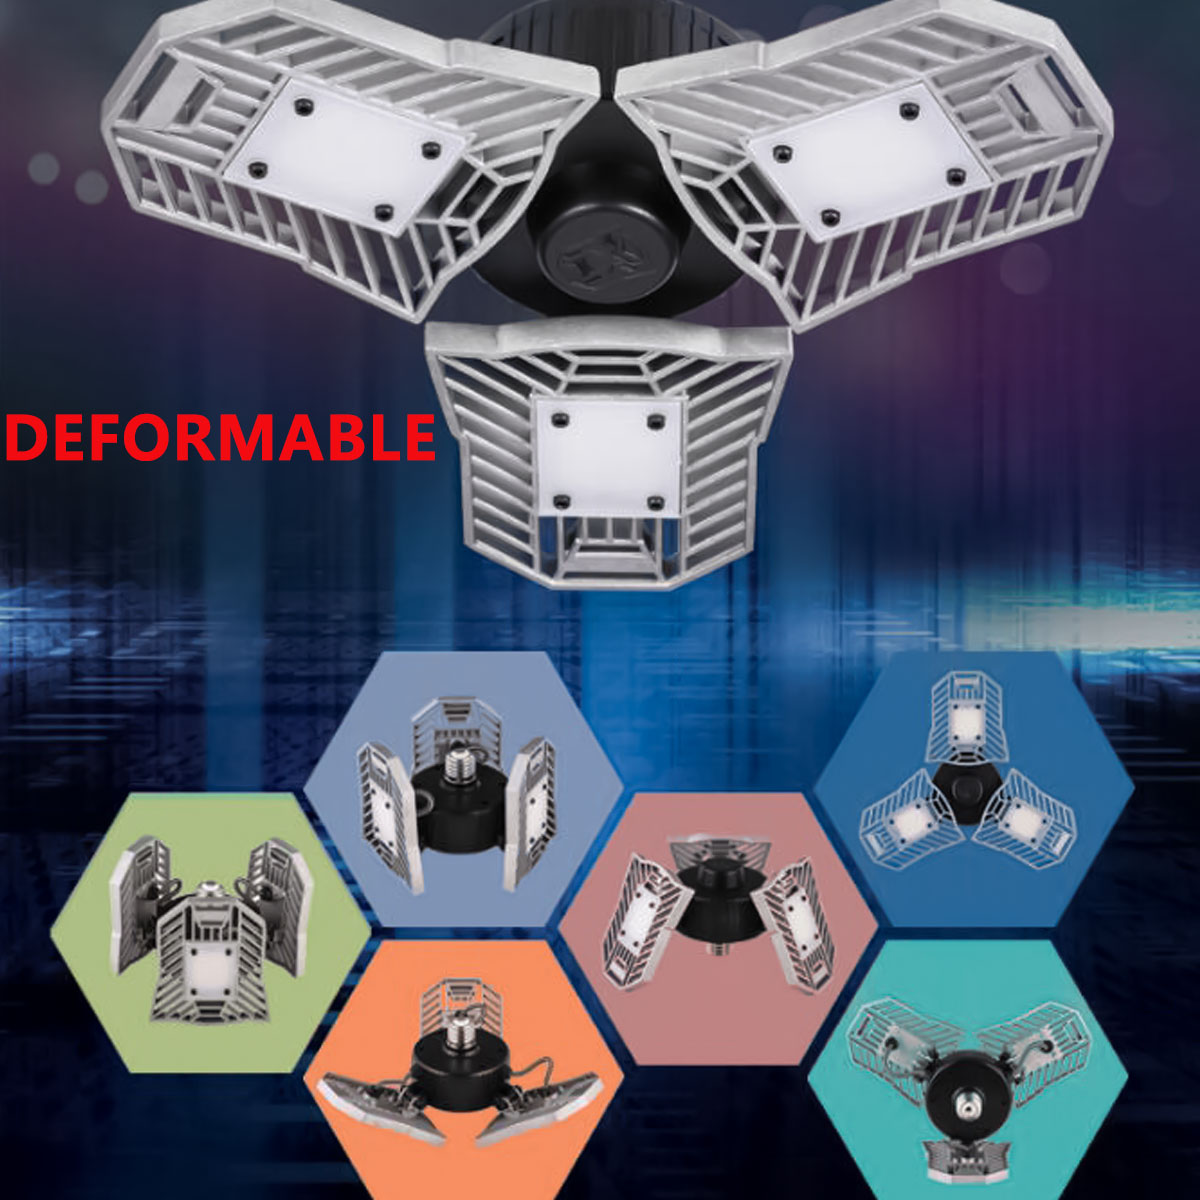 60W-85-265V-Deformable-LED-Garage-Light-Super-Bright-Ceiling-Lamp-E27-Base-1730018-4